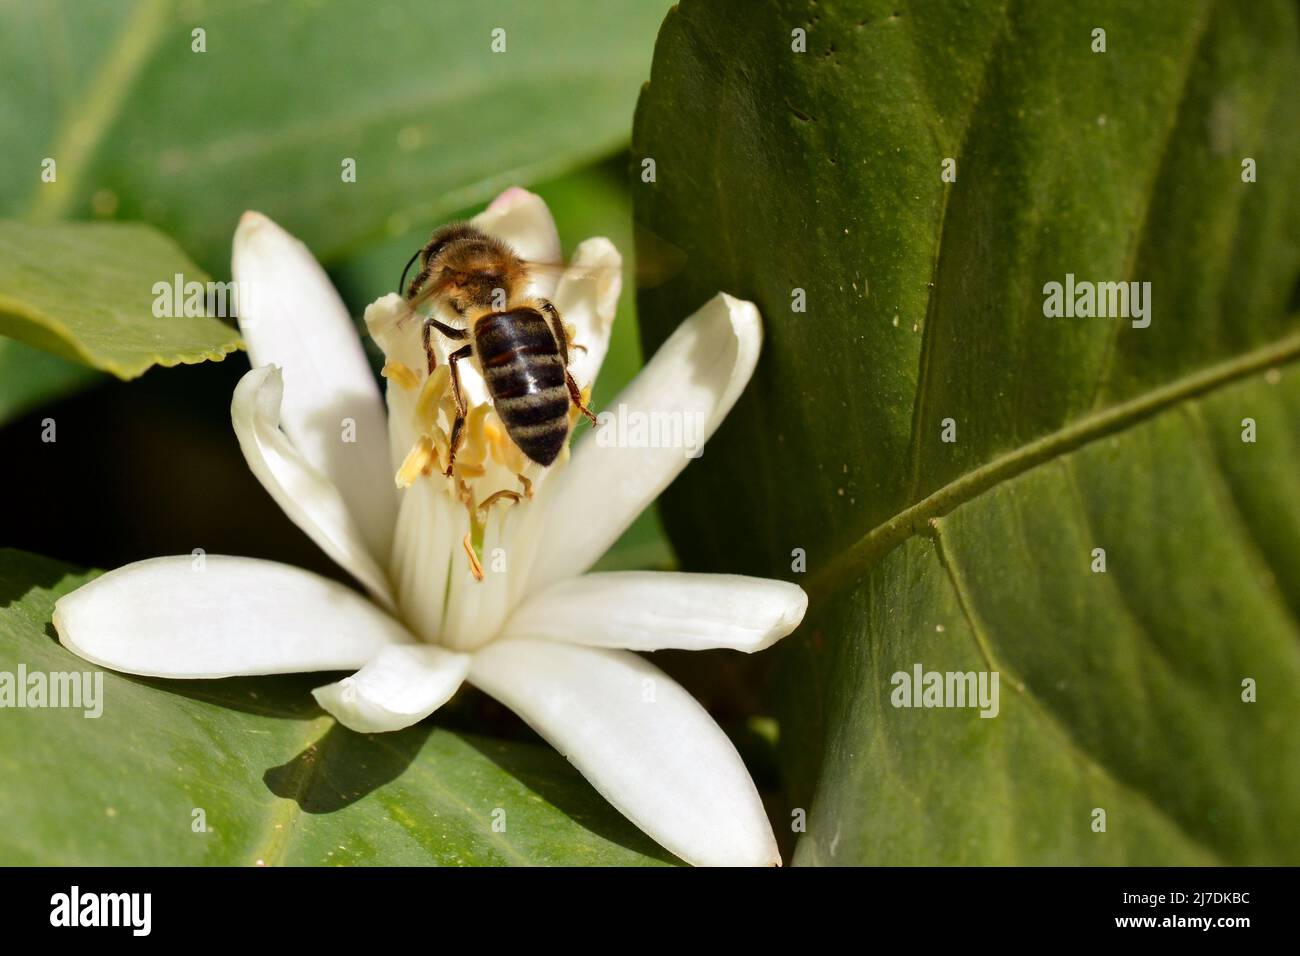 Detalle de una abeja en una flor de azahar en primavera Stock Photo